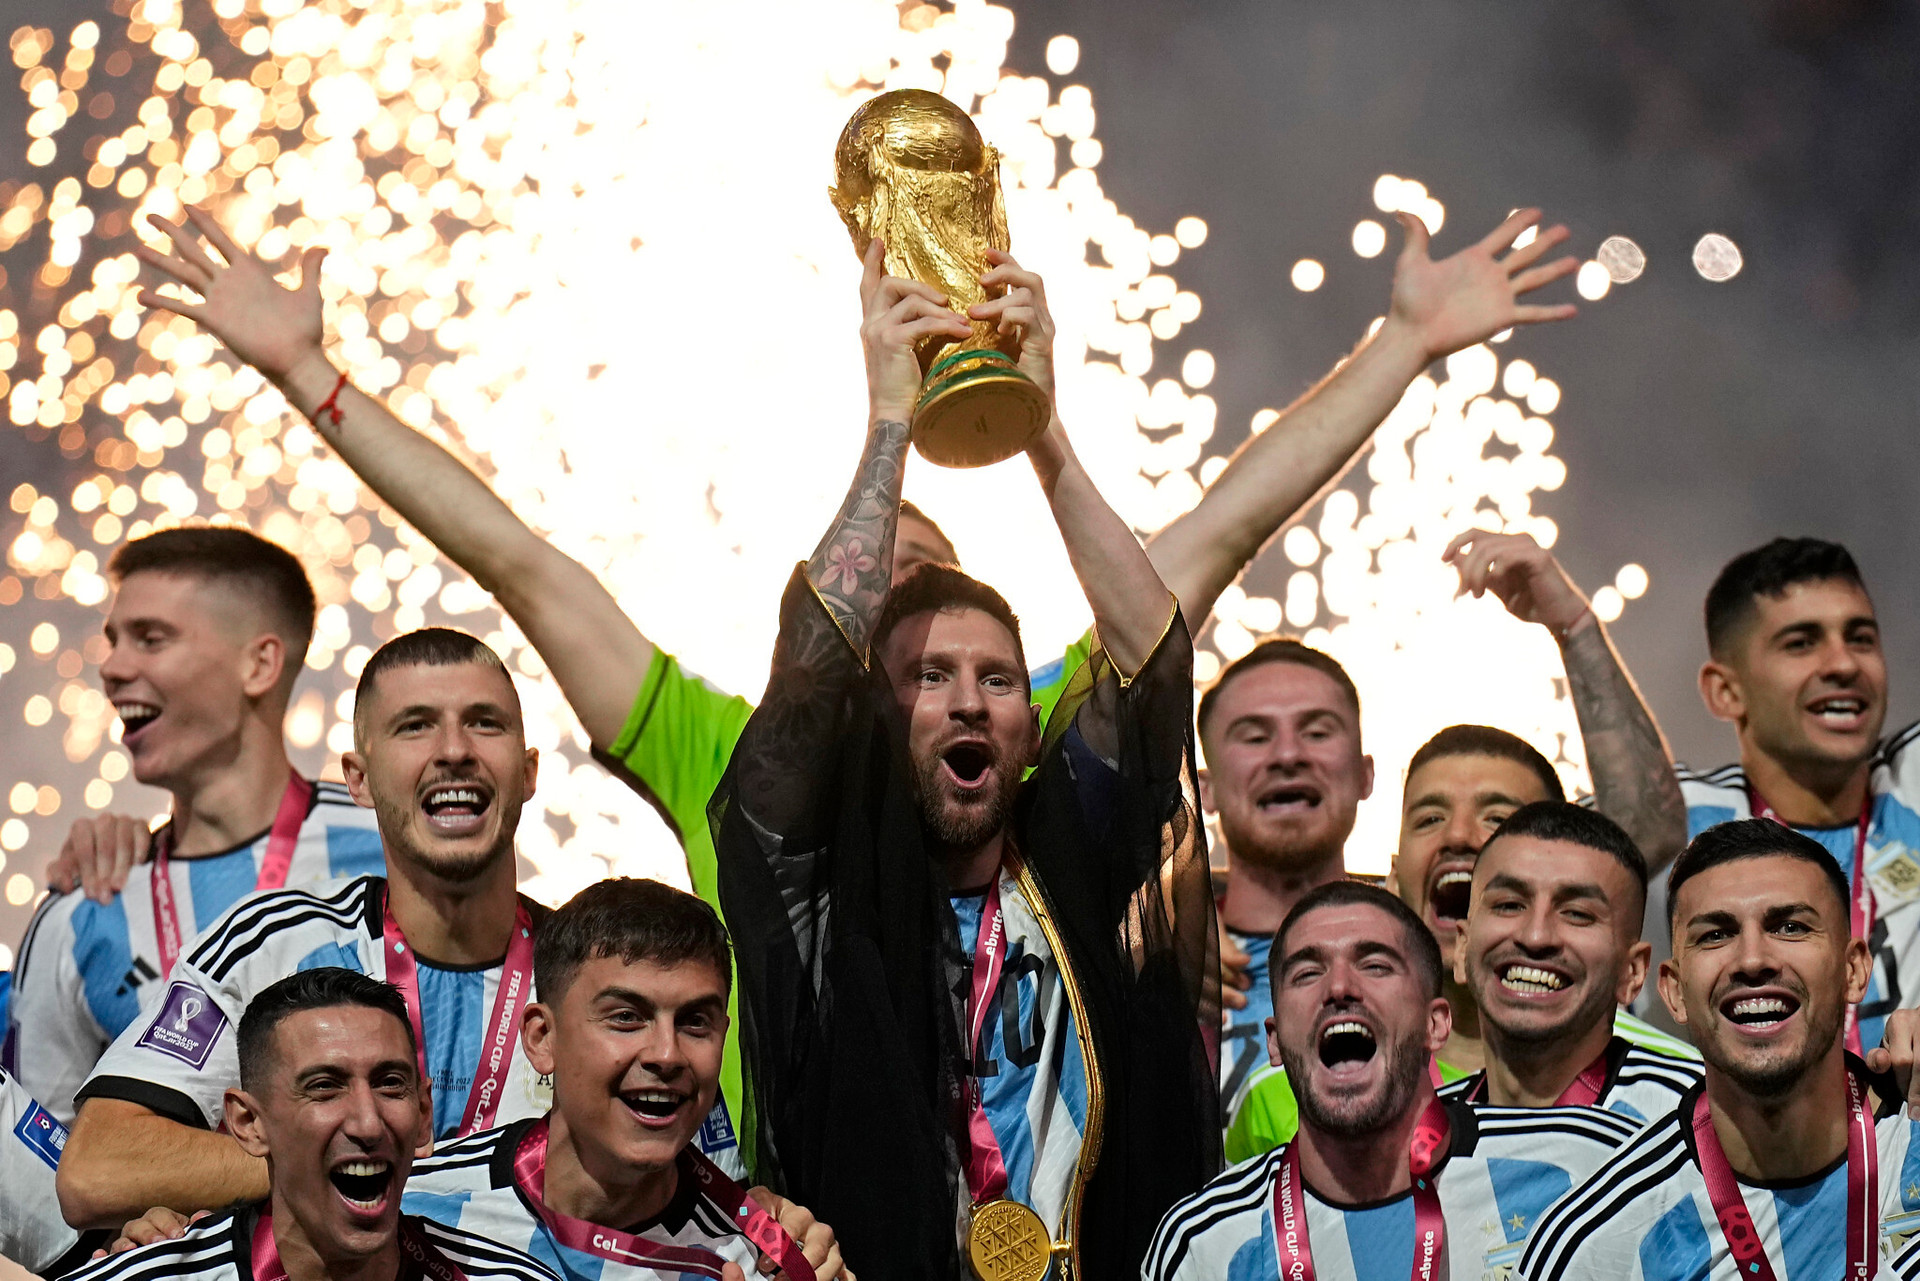 Cup vàng của Messi là niềm tự hào của mọi người hâm mộ. Với biểu cảm hạnh phúc của anh ấy trên bộ đồng phục Argentina, các fan hâm mộ sẽ thấy sự vui mừng của Messi và cả điều đó sẽ truyền tới cho những người xem hình.